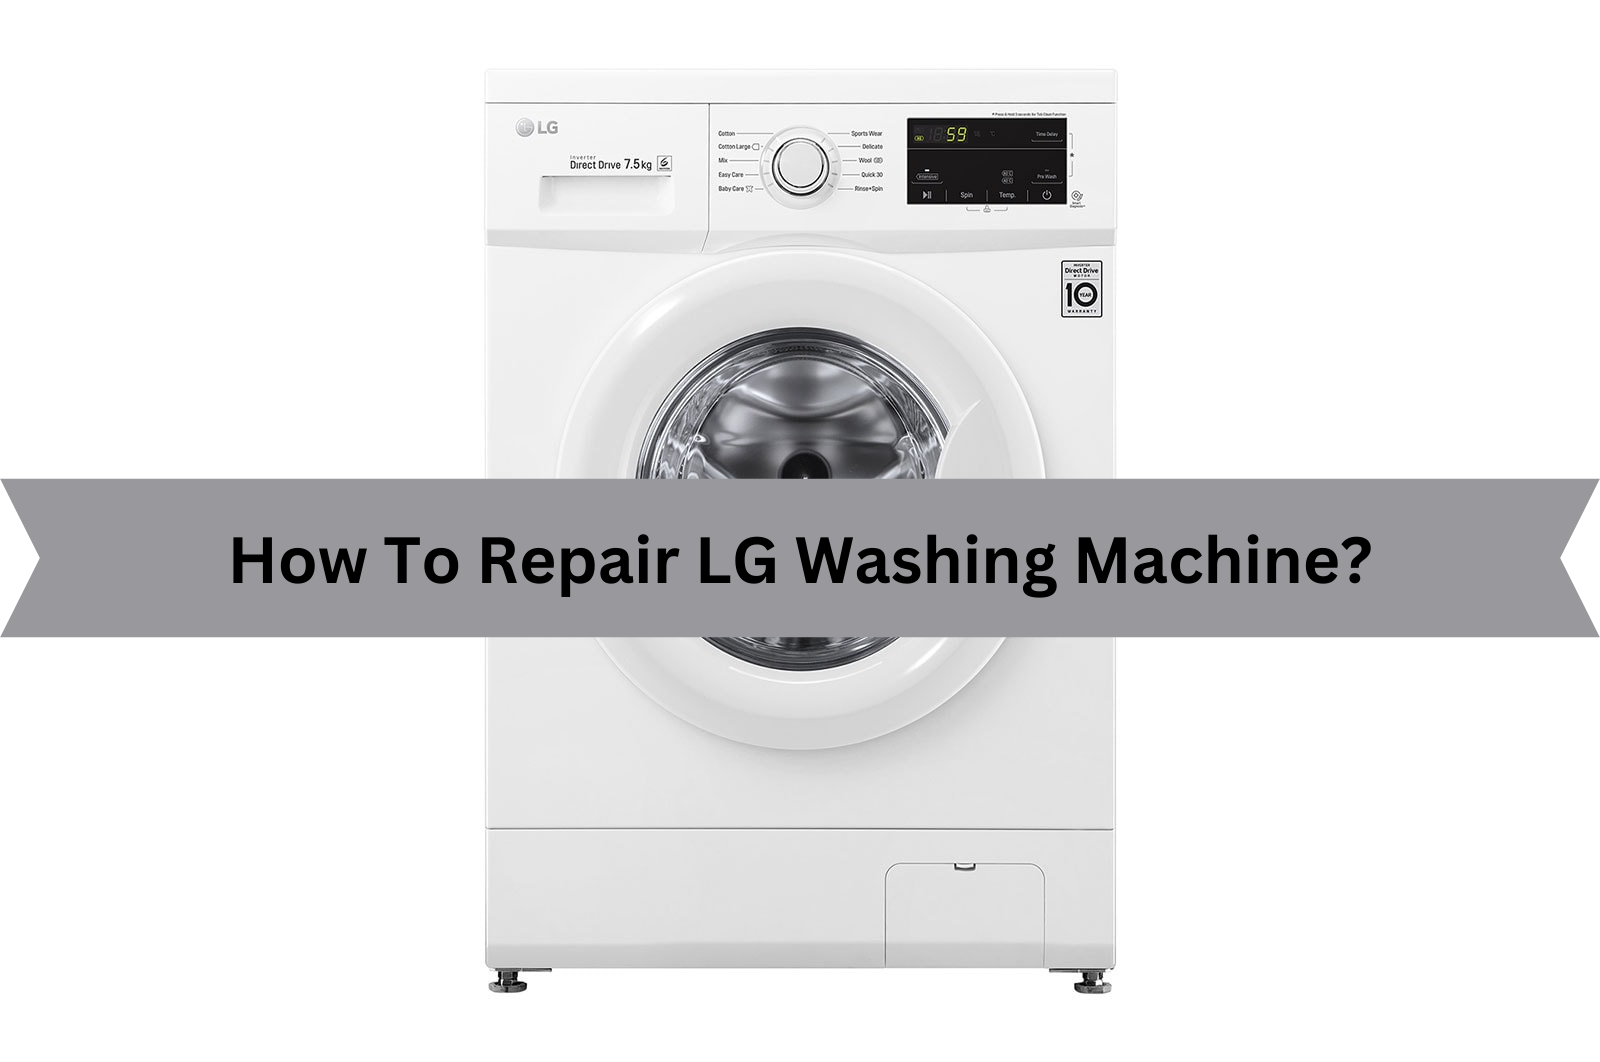 How To Repair LG Washing Machine?